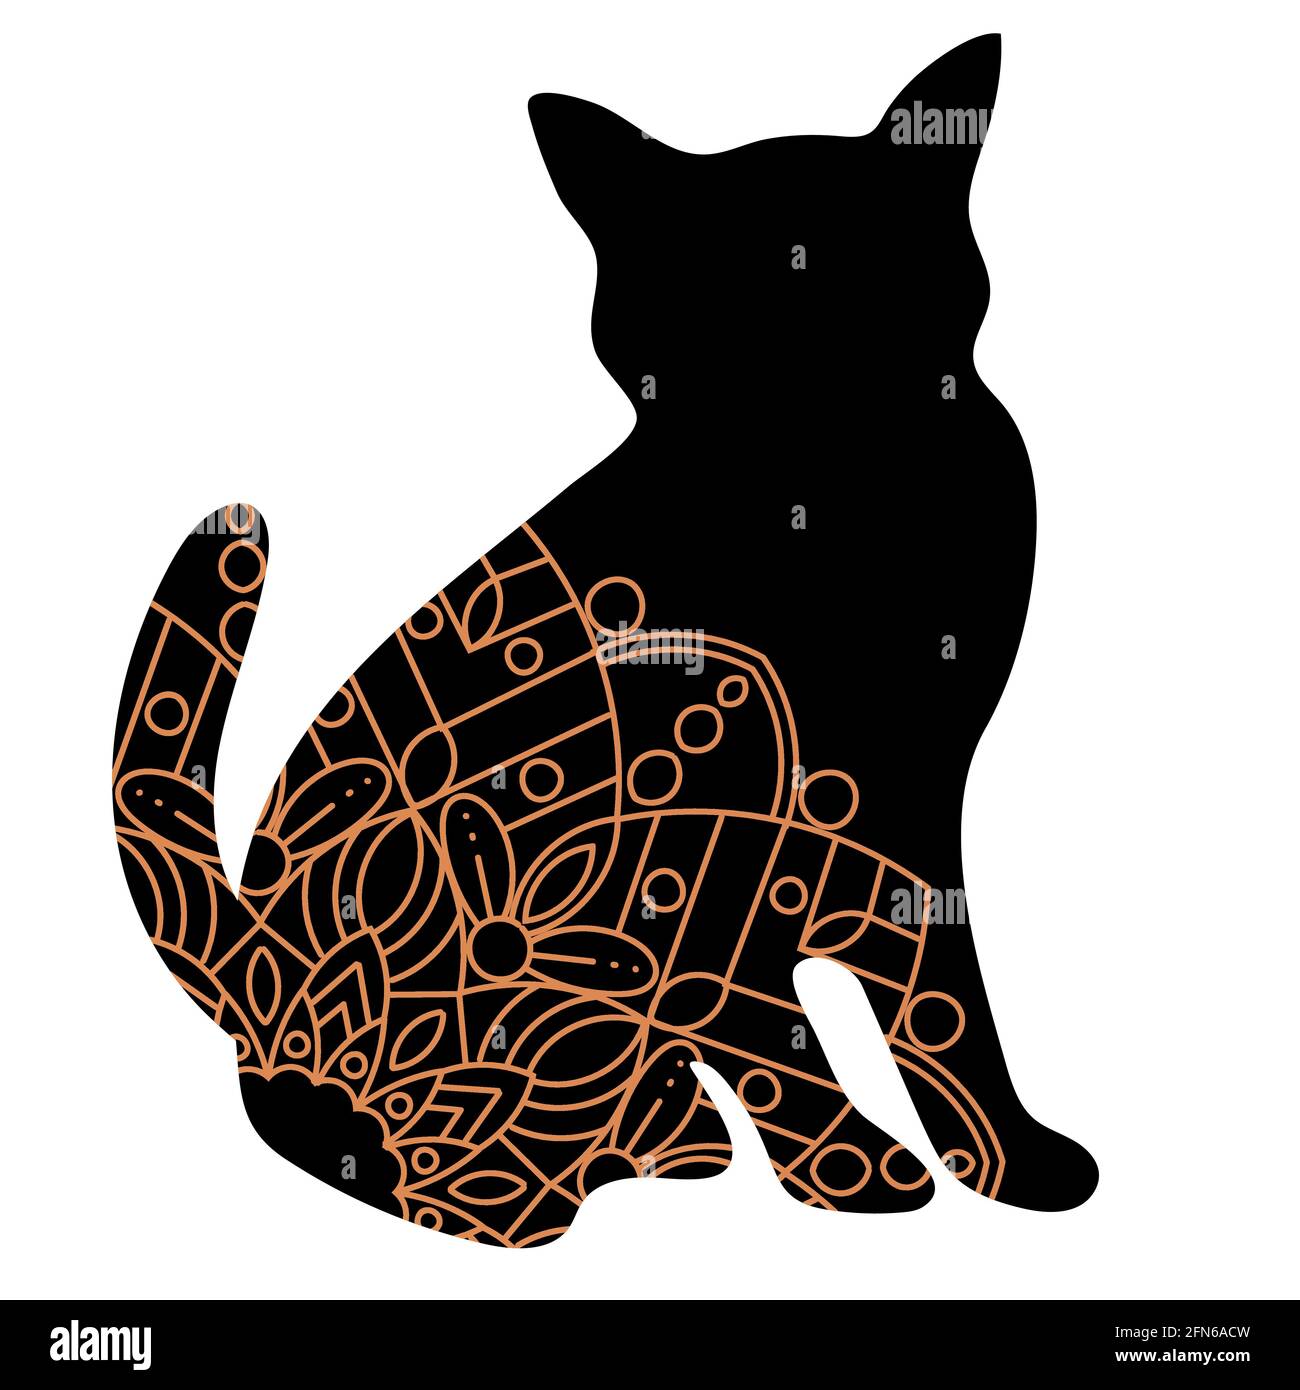 Doodle Katze Mandala in schwarz und Gold für Seite Erwachsene Malbücher, Tier-Vektor-Muster. Anti-Stress-Design. Stock Vektor